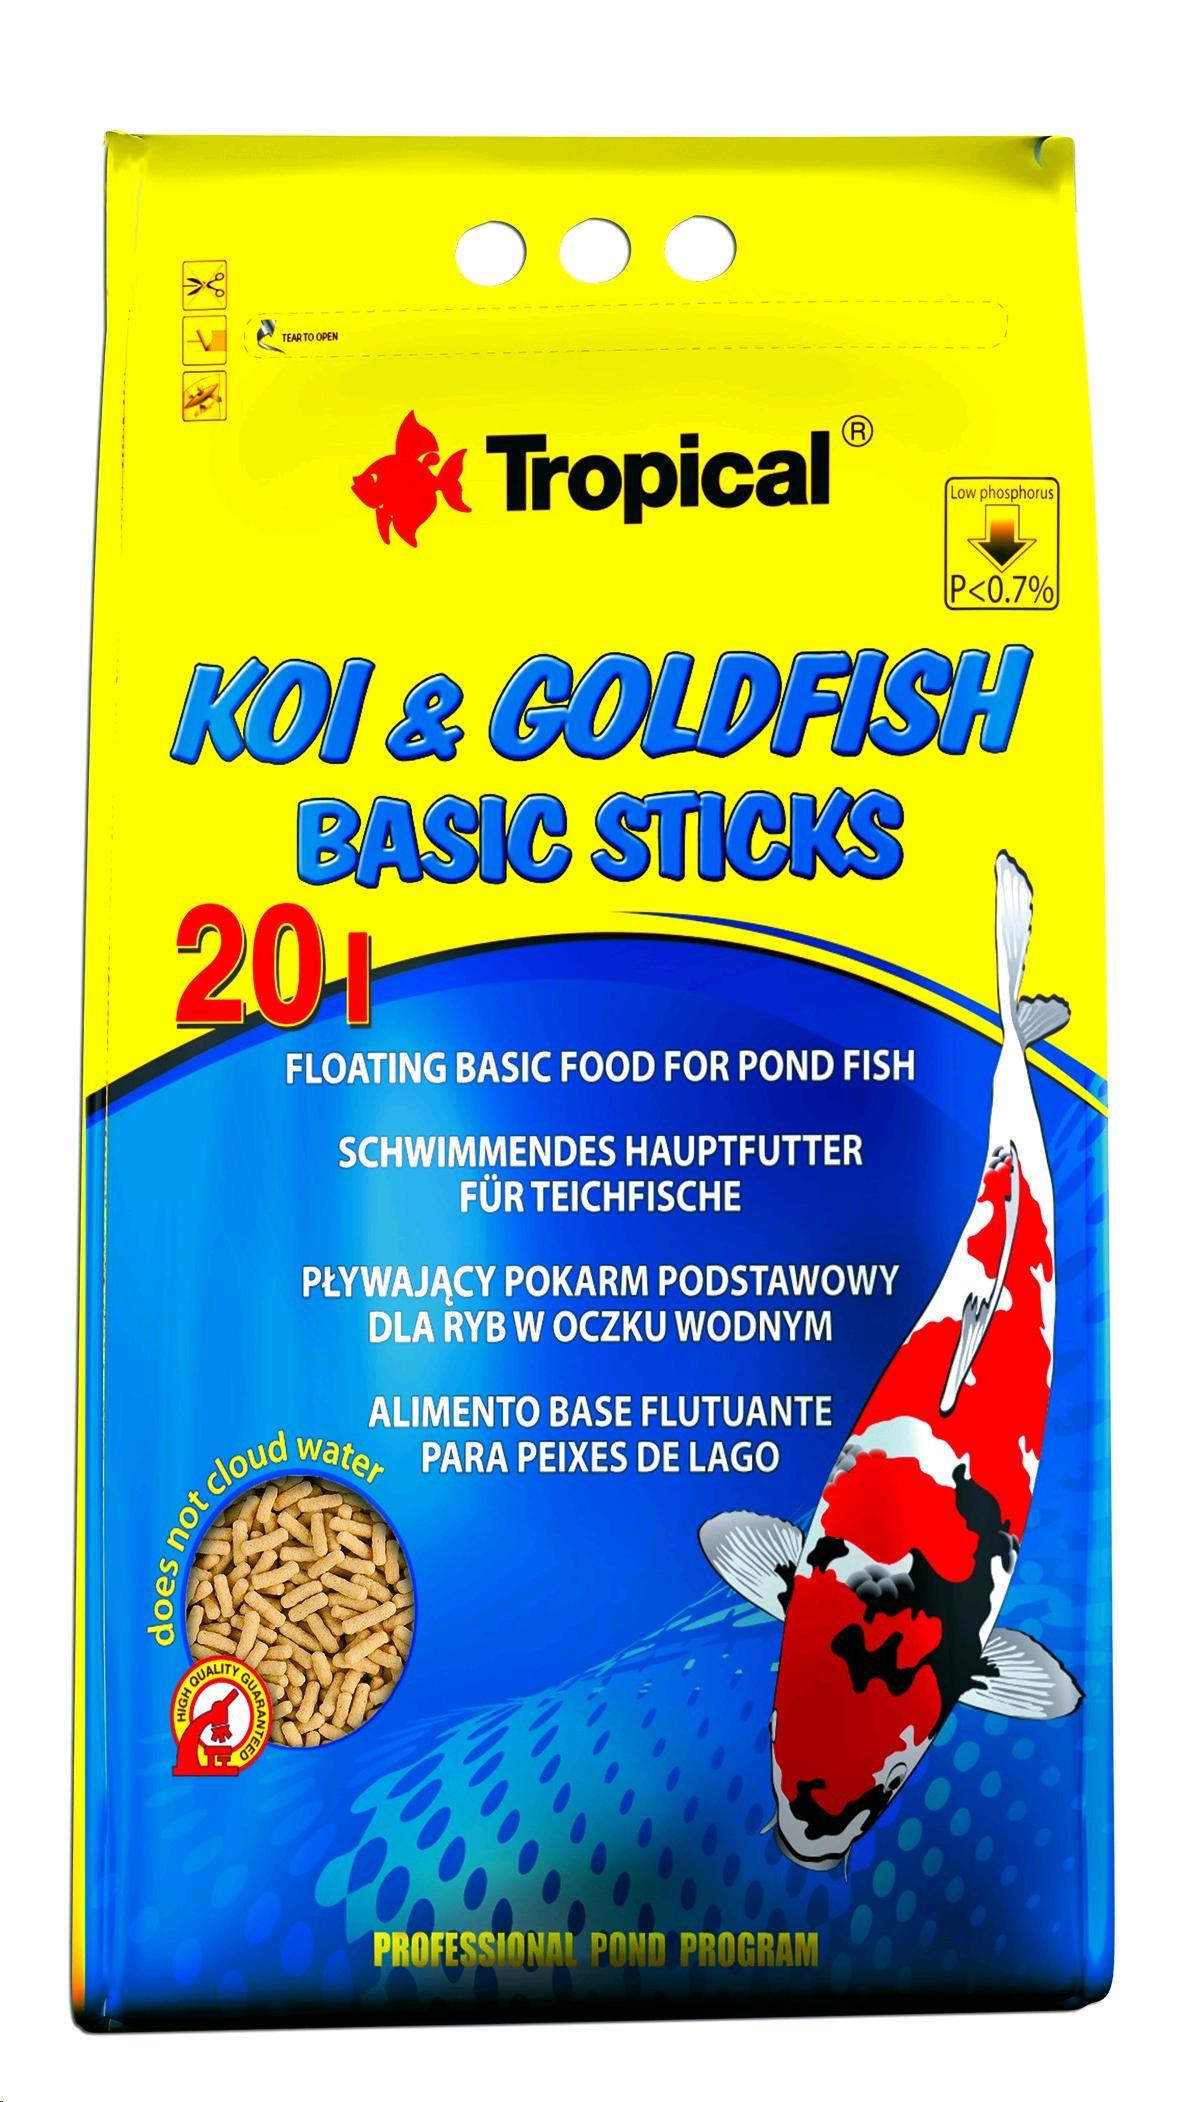 KOI & GOLDFISH BASIC STICKS BAG